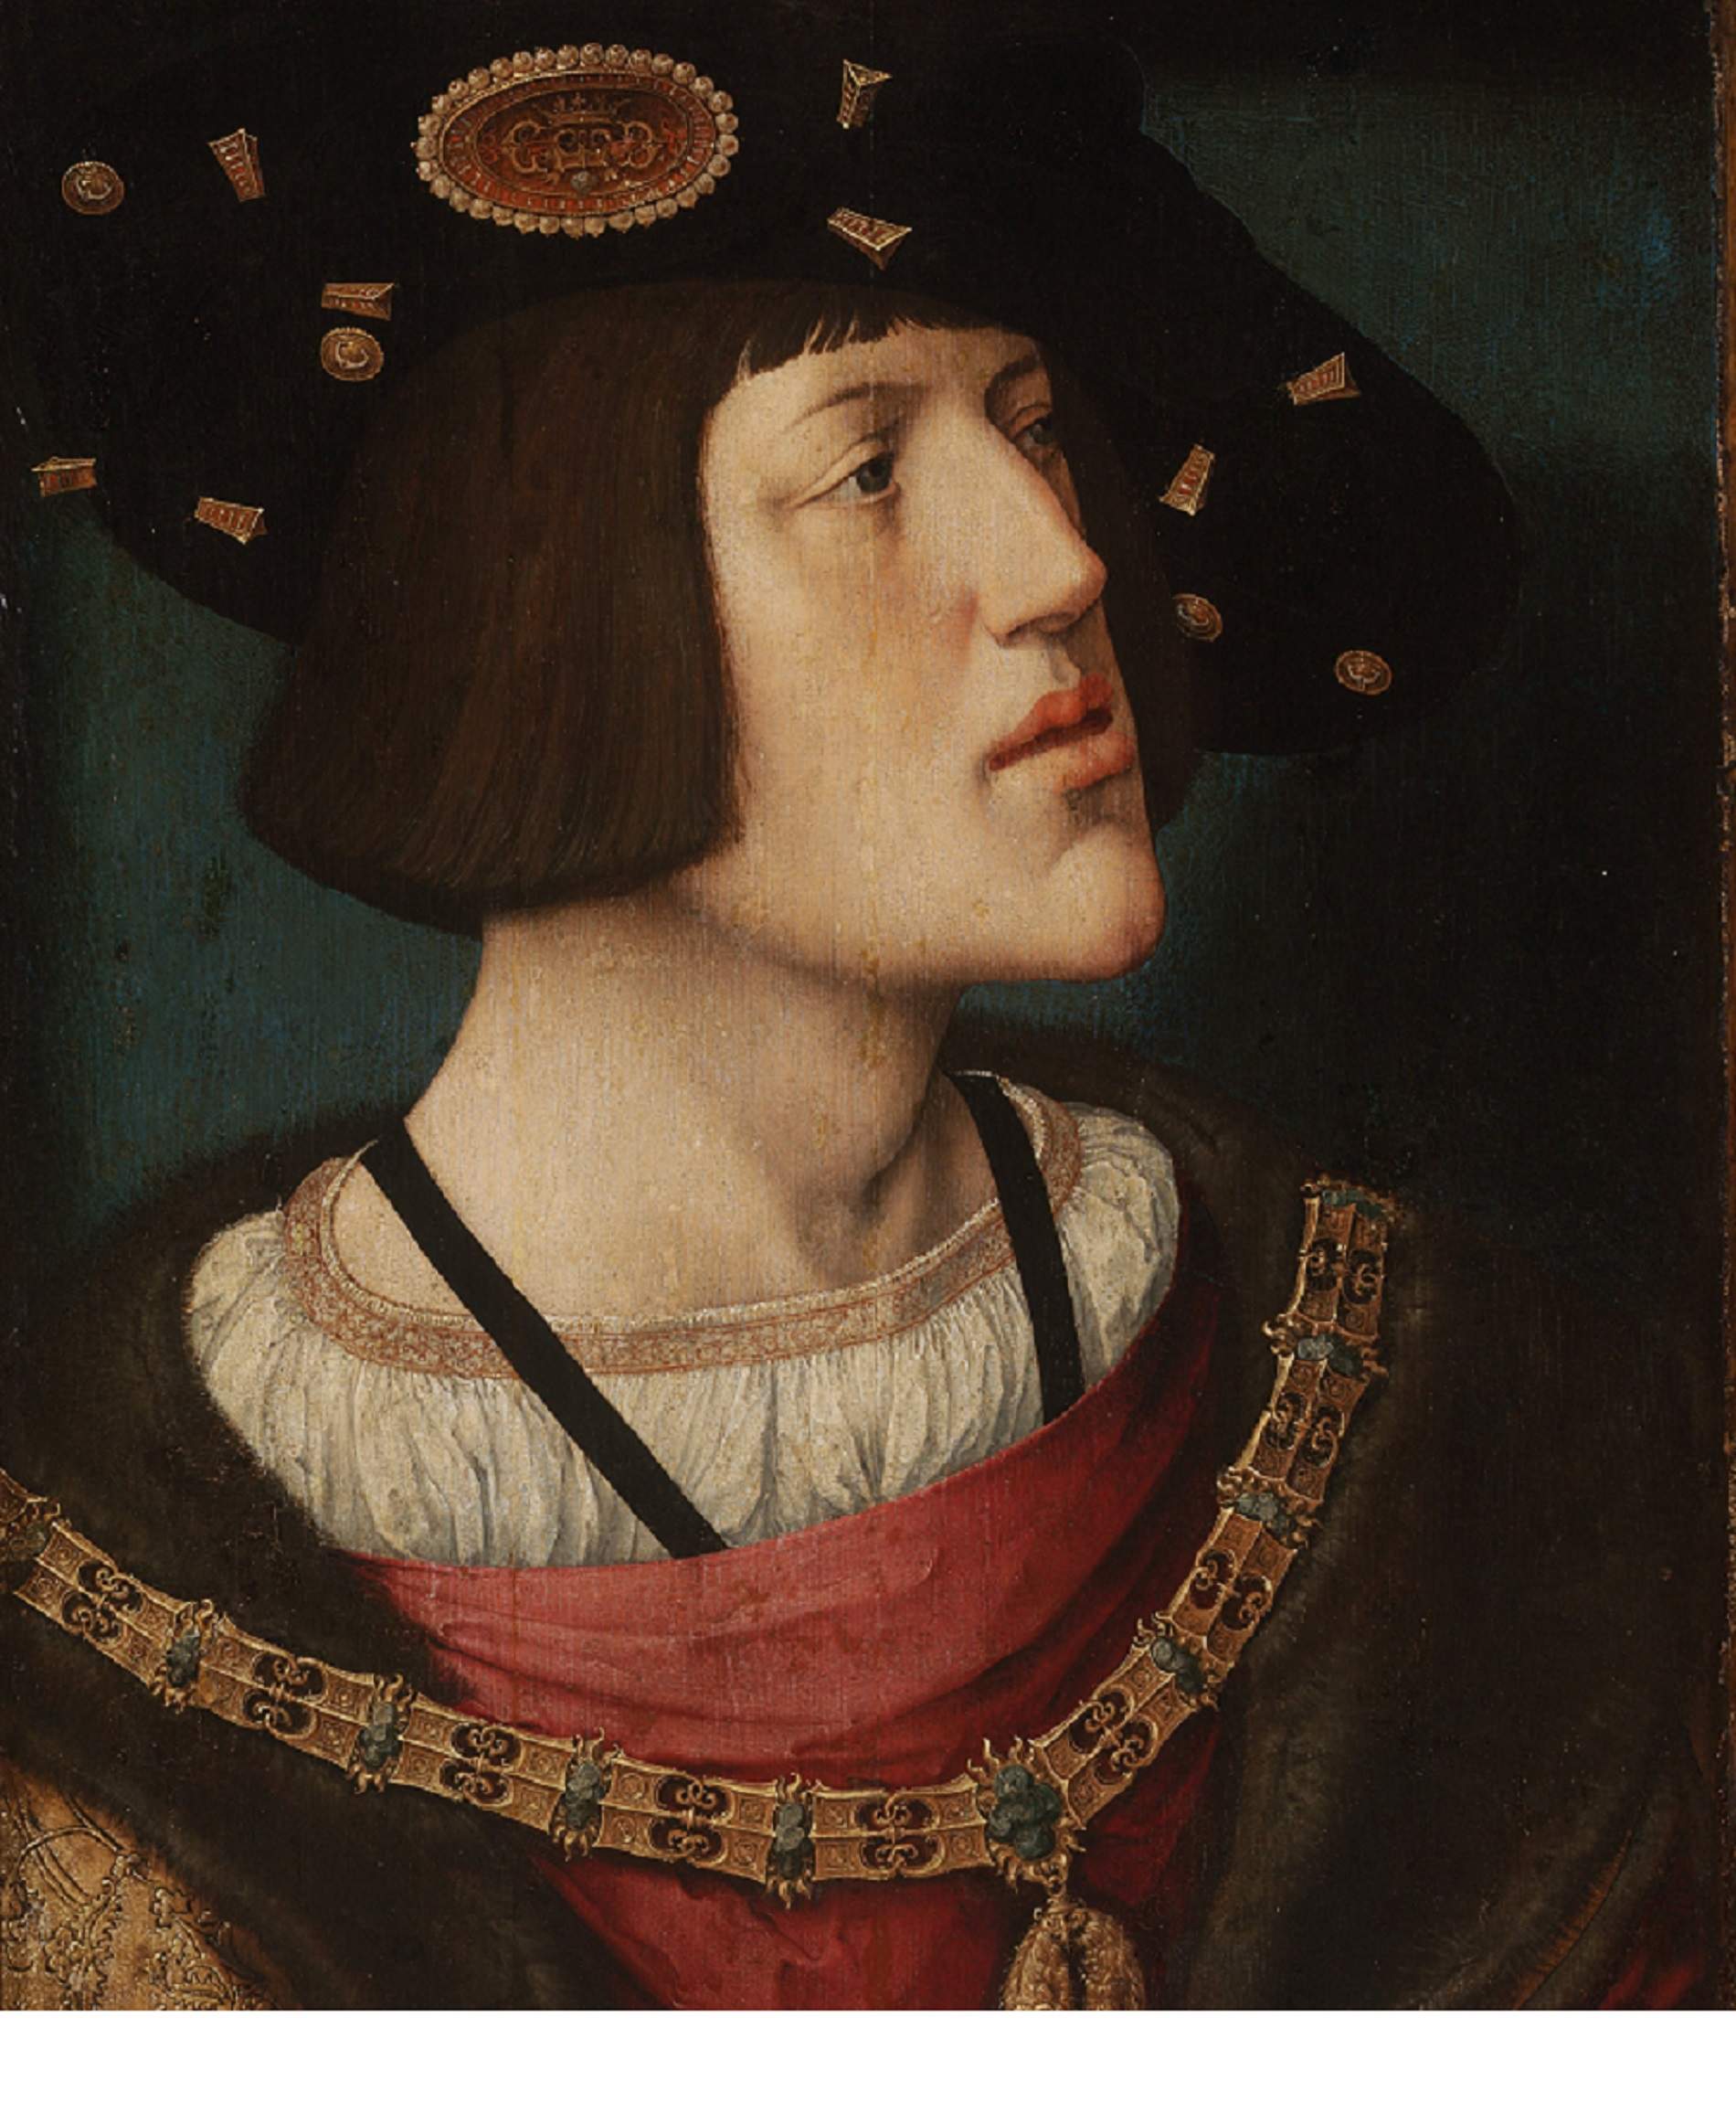 Carles de Gant és nomenat rei amb l’oposició dels poders hispànics